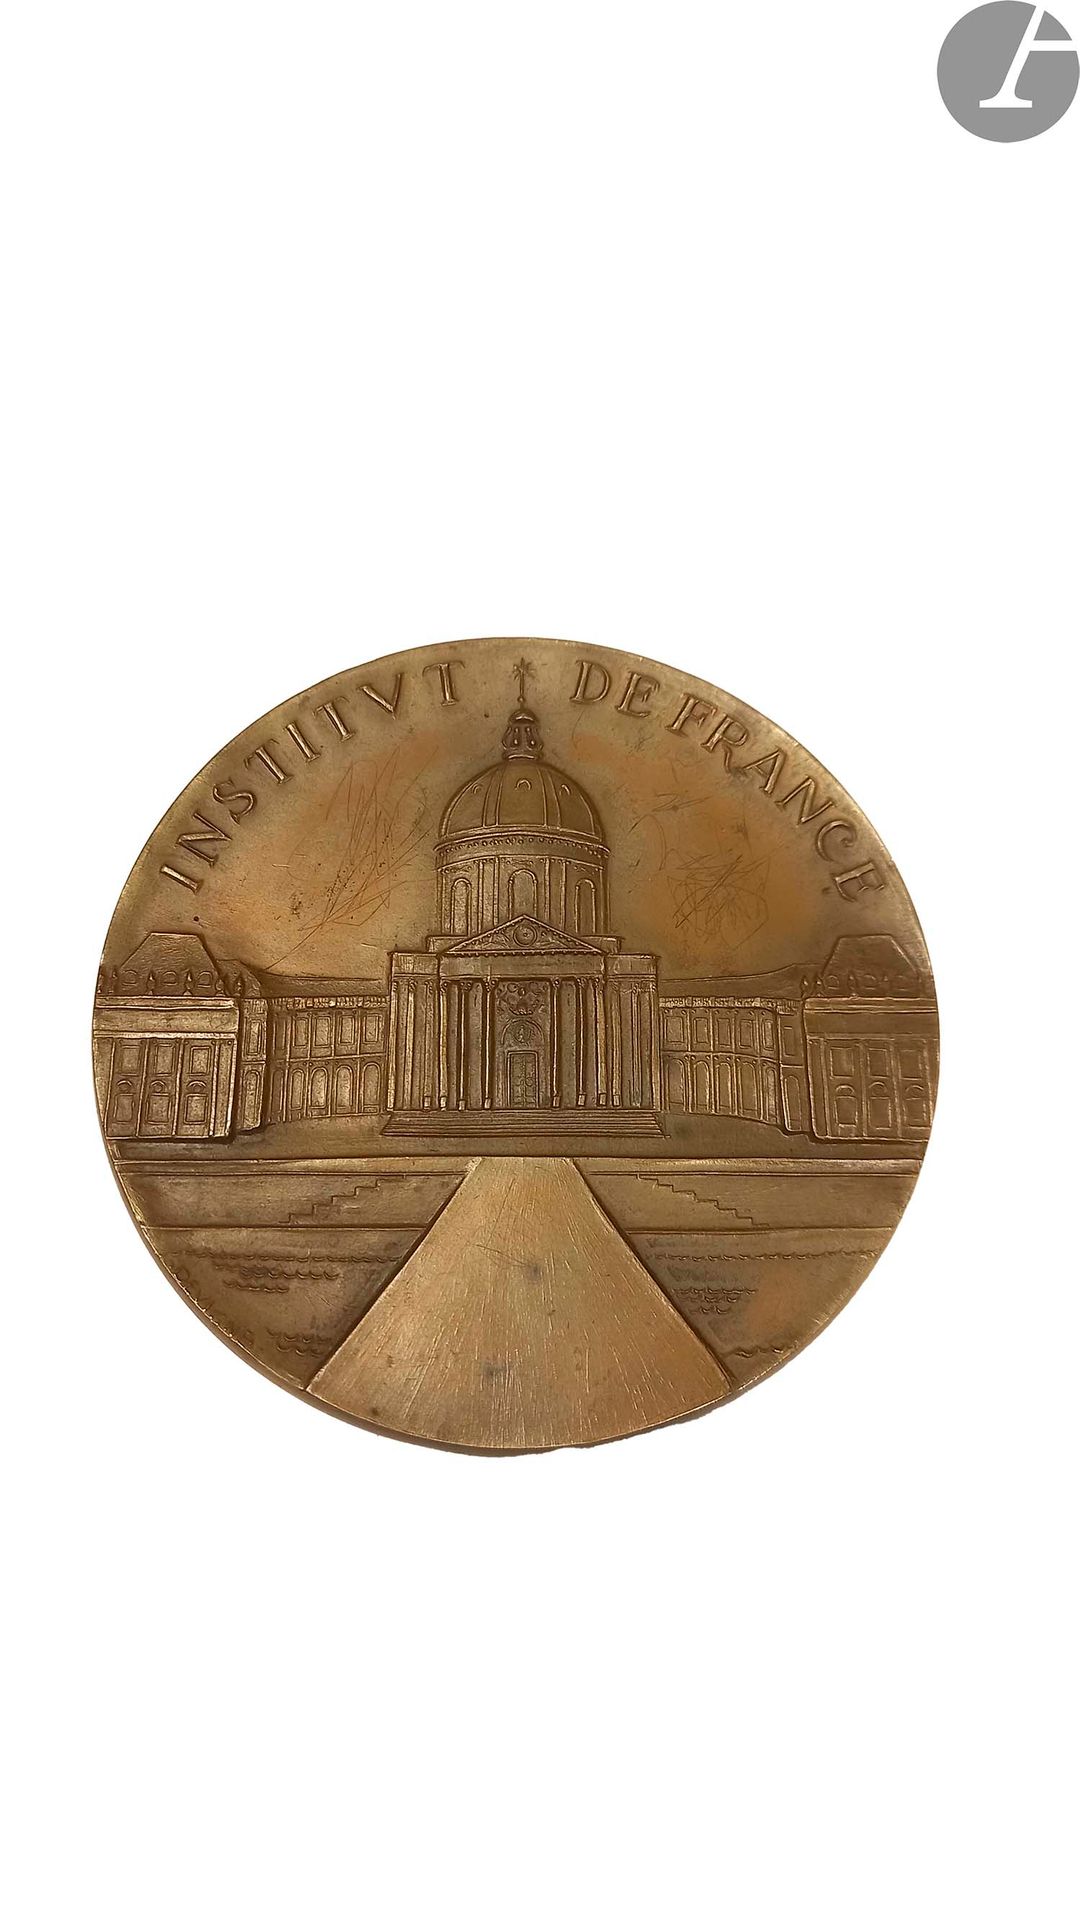 Null Medalla de bronce de Jacques Devigne.
Anverso: Instituto de Francia. - Reve&hellip;